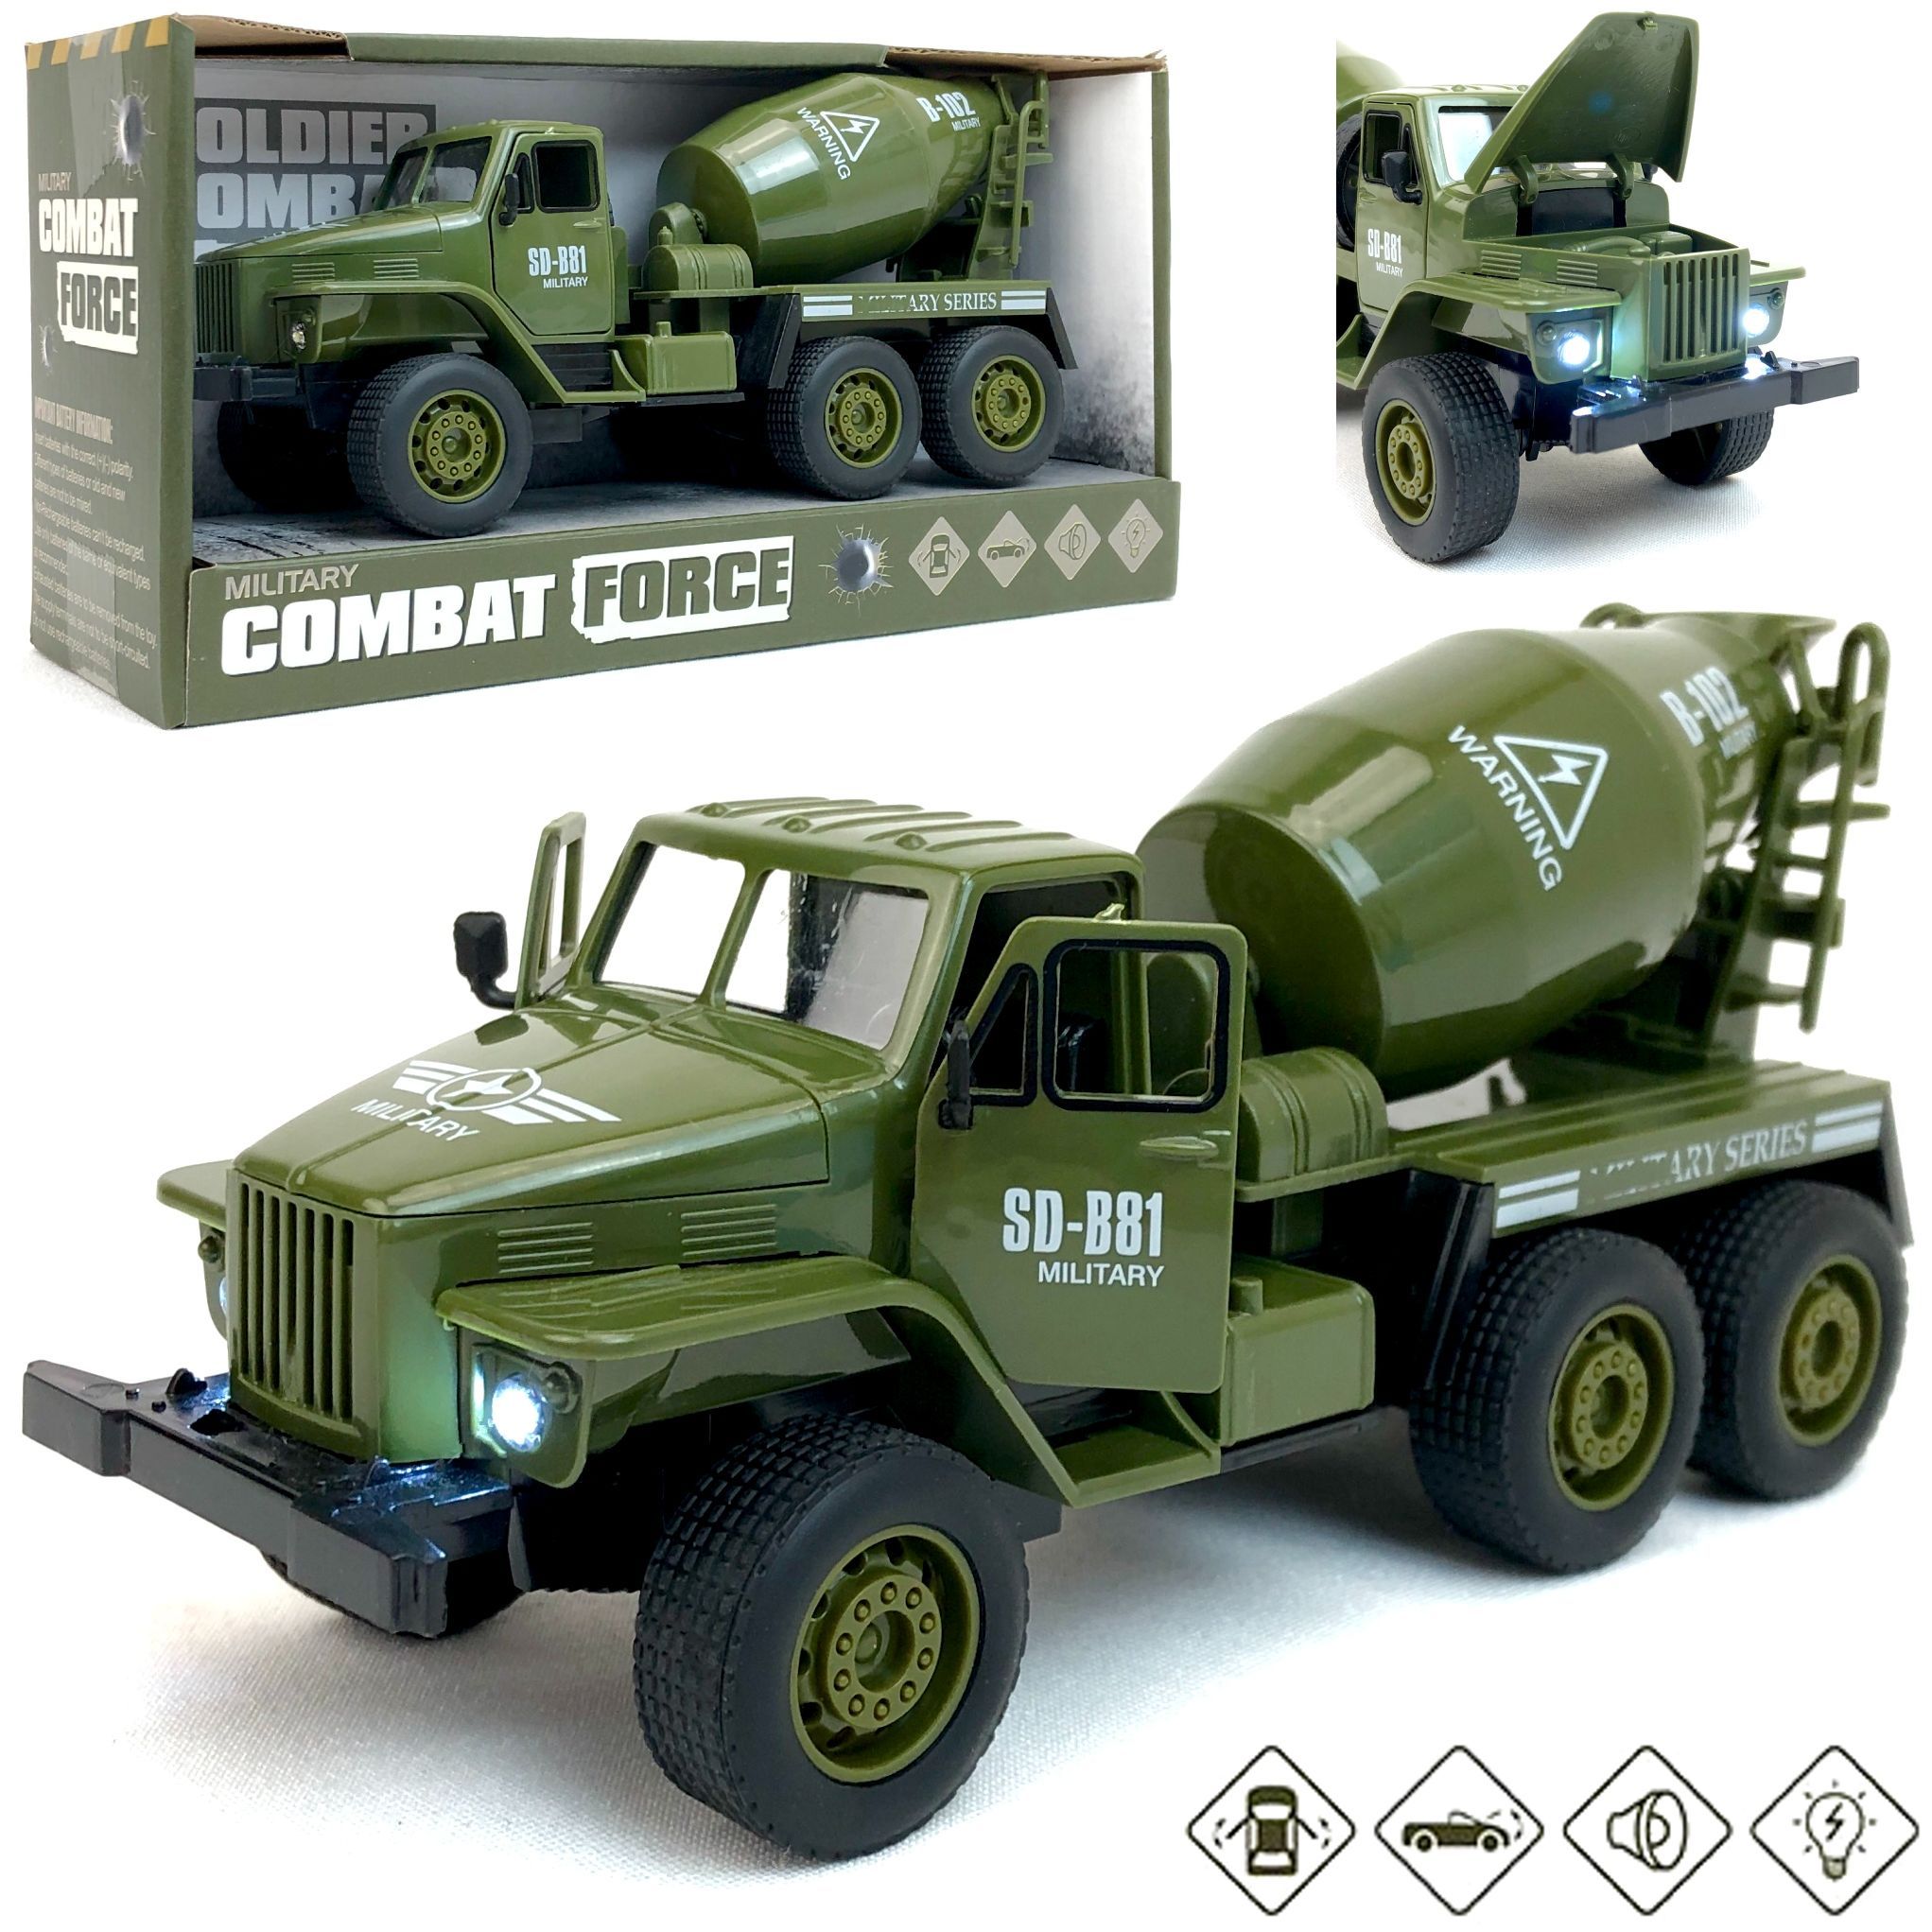 Инерционный военный грузовик PLAYSMART Combat Force, открываются двери и капот kiddiedrive инерционный военный грузовик 1601714